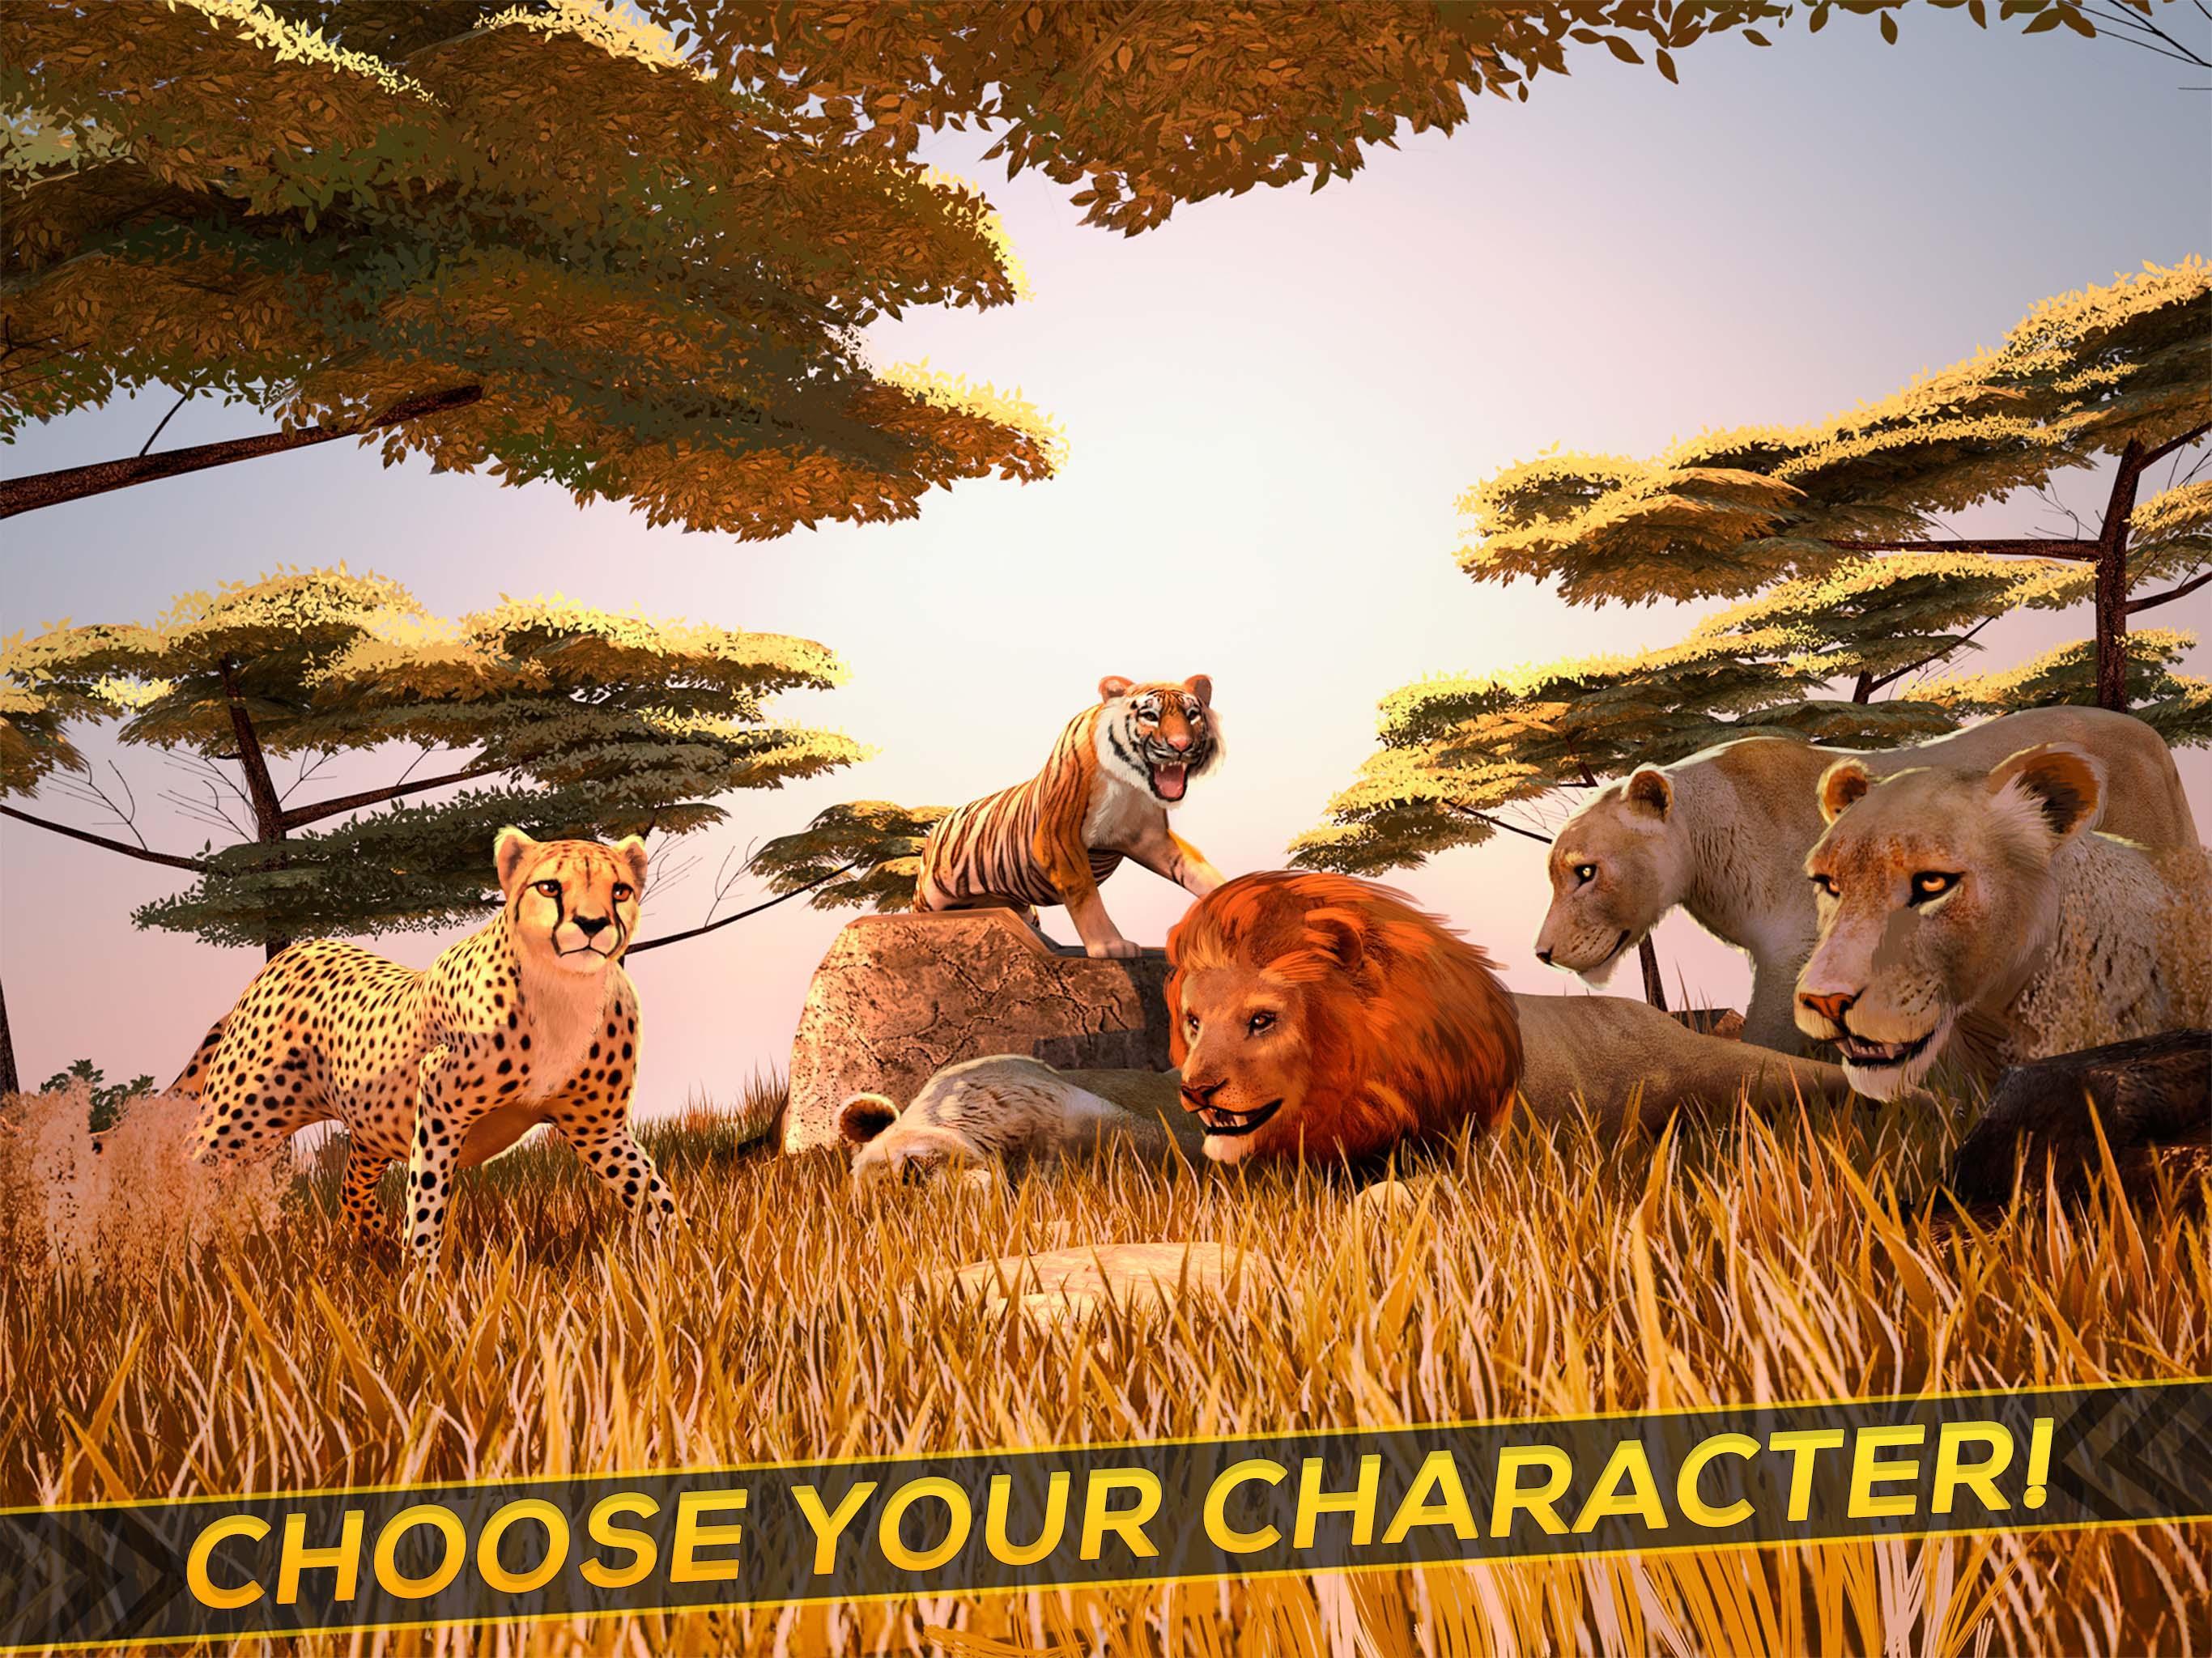 Wild life 3d. Wild animals игра. Лучшие симуляторы животных на андроид. Звериный тройничок в диких условиях из игры Wild Life.